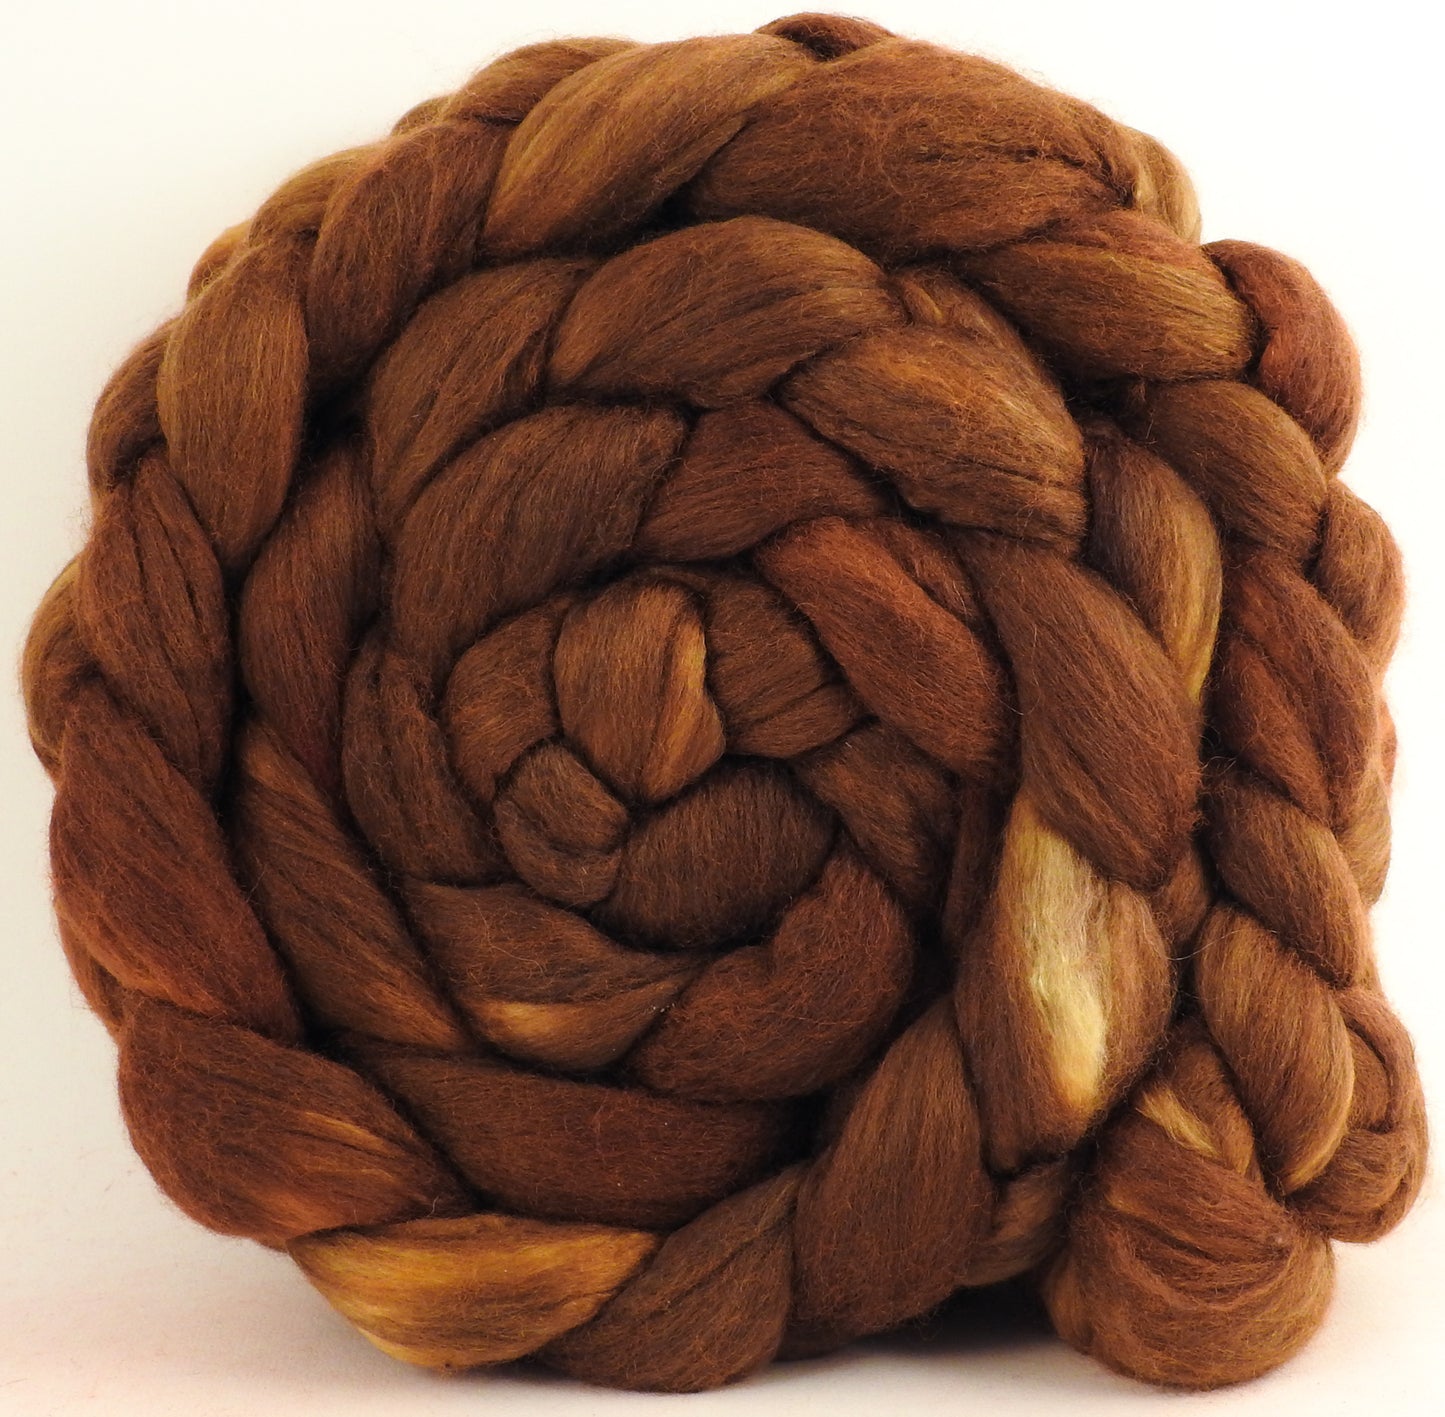 Bronze - Merino/ Mulberry Silk (50/50) - (5 oz)